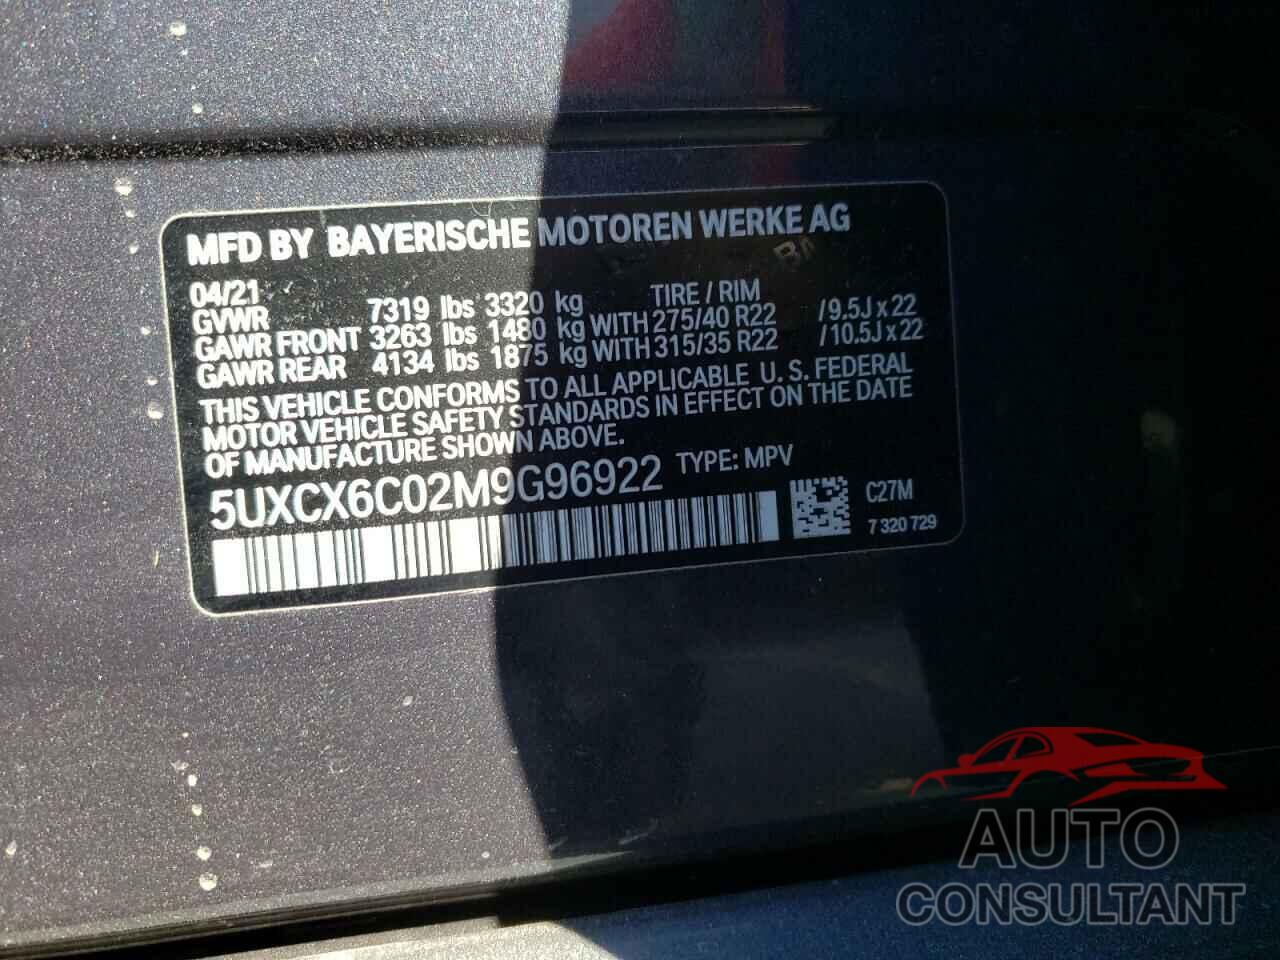 BMW X7 2021 - 5UXCX6C02M9G96922